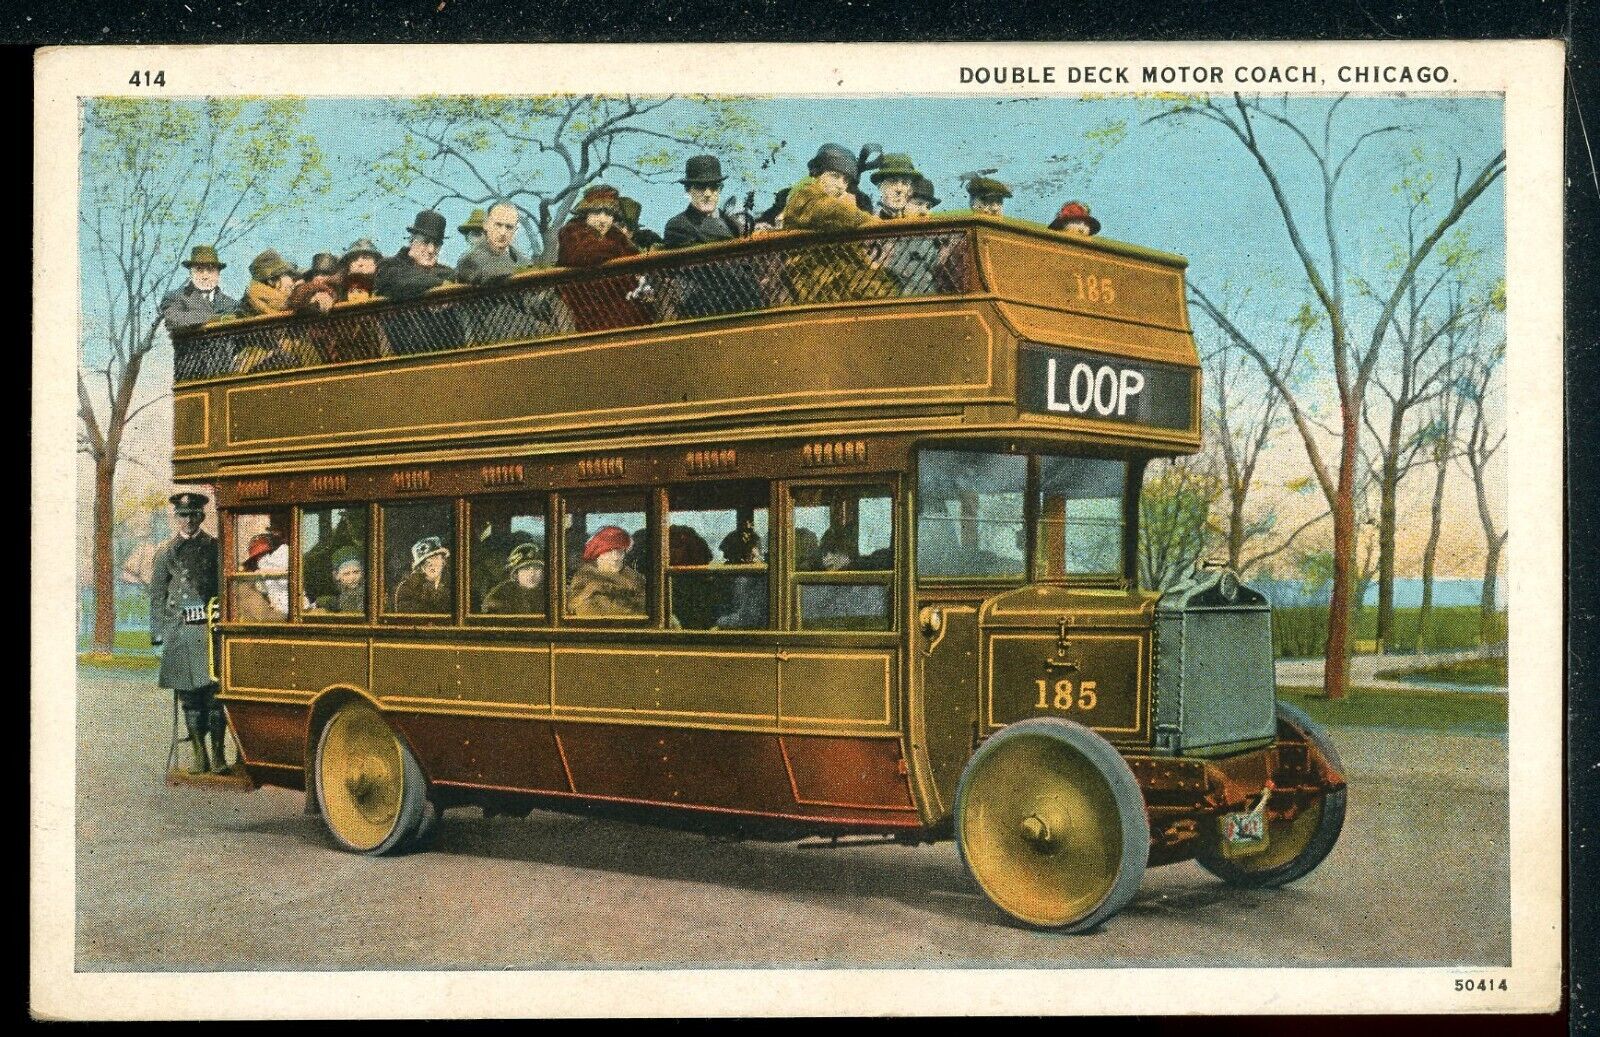 1926 Double Decker Bus Chicago Illinois Historic Vintage Postcard A3 75